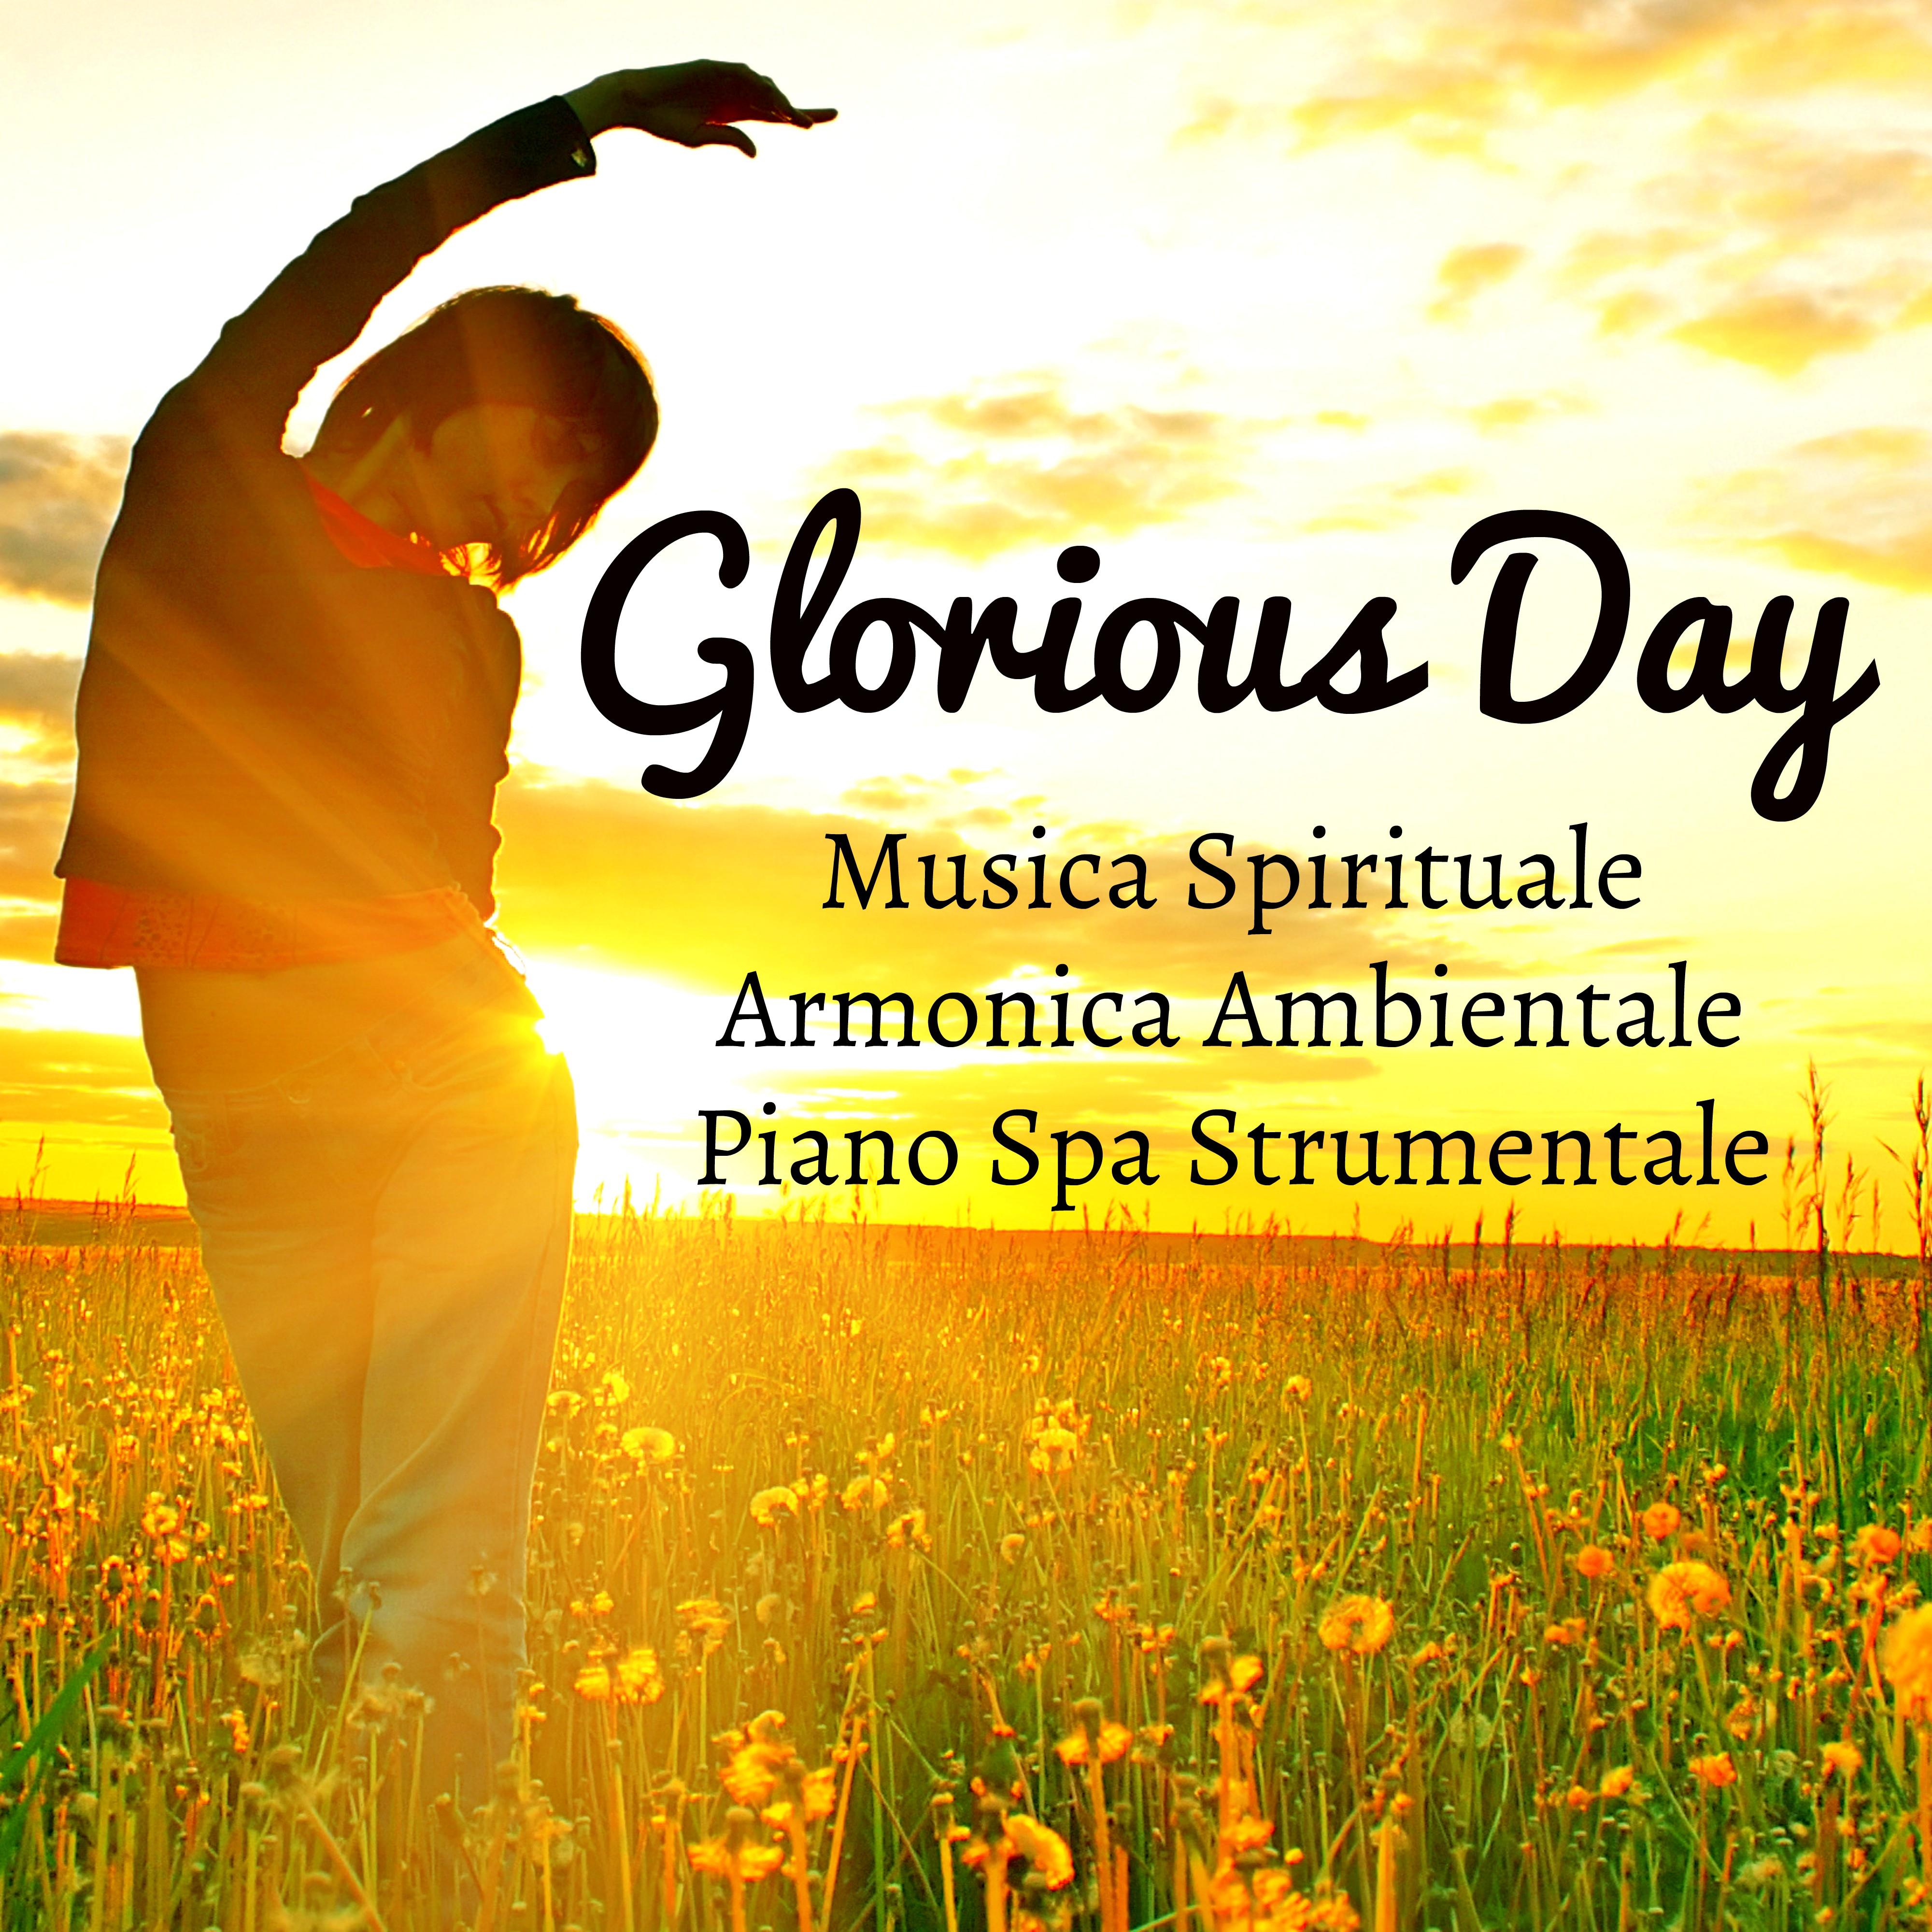 Glorious Day - Musica Spirituale Armonica Ambientale Piano Spa Strumentale per Cura della Mente Sonno Profondo Tecniche di Meditazione